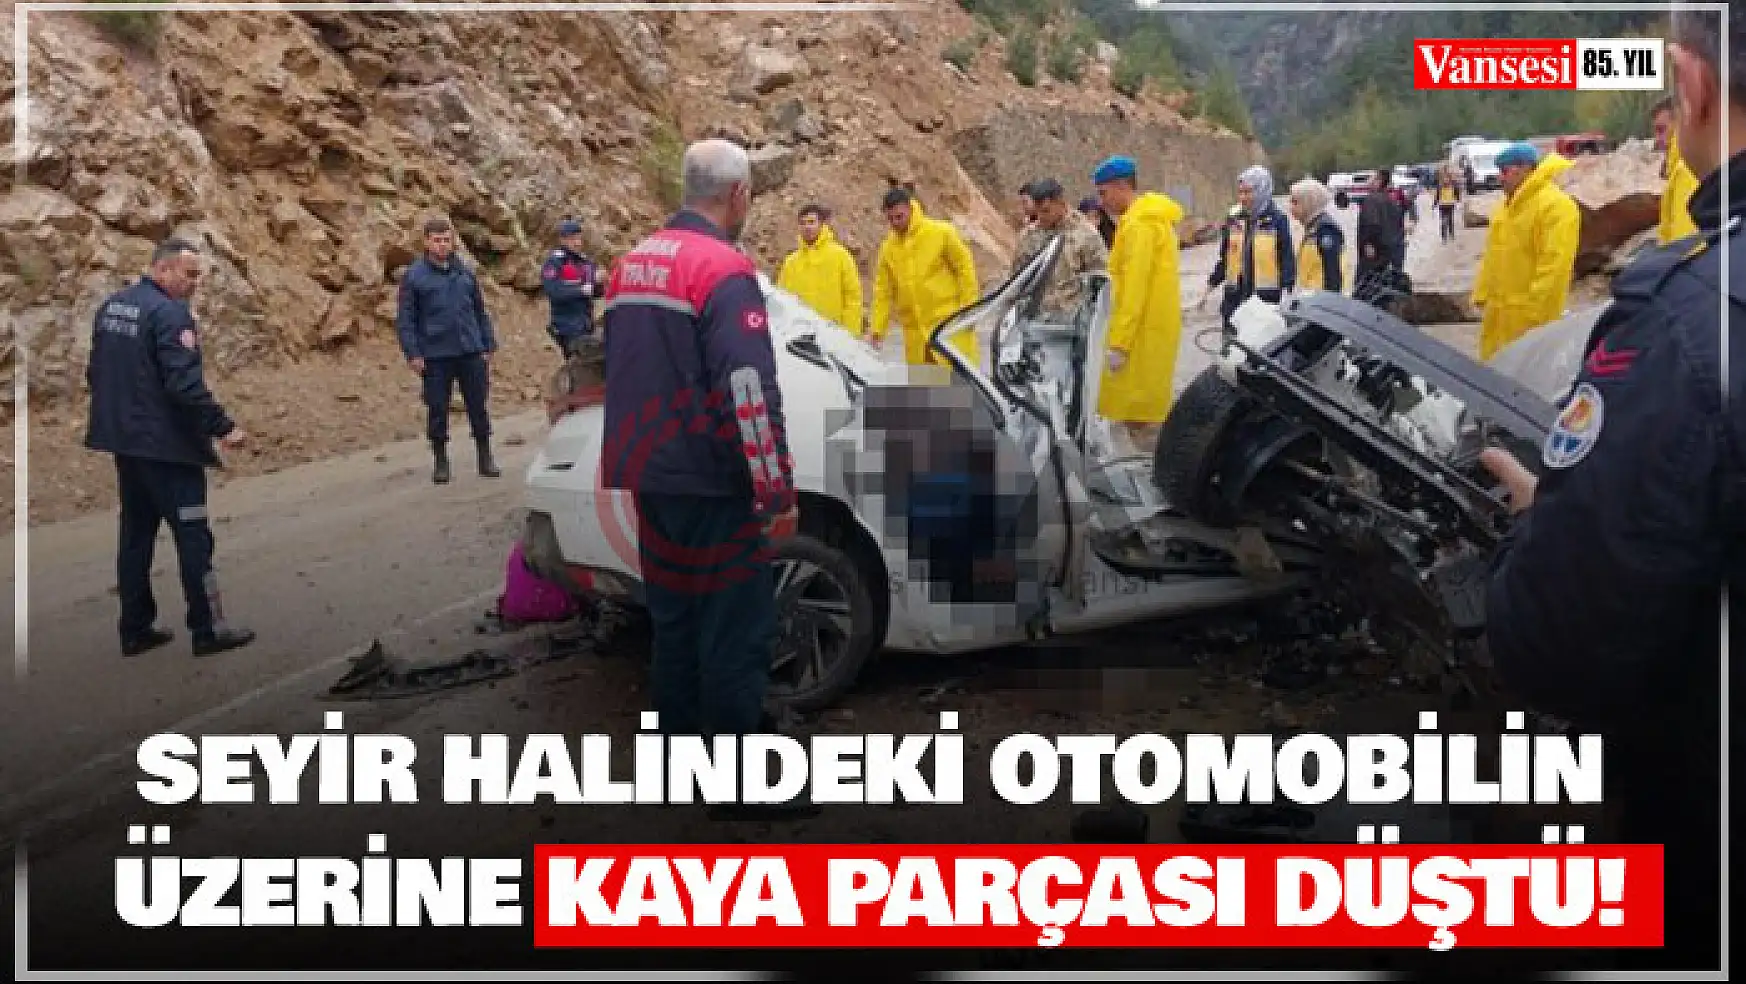 Adana'da otomobilin üzerine kaya parçası düştü: 4 ölü